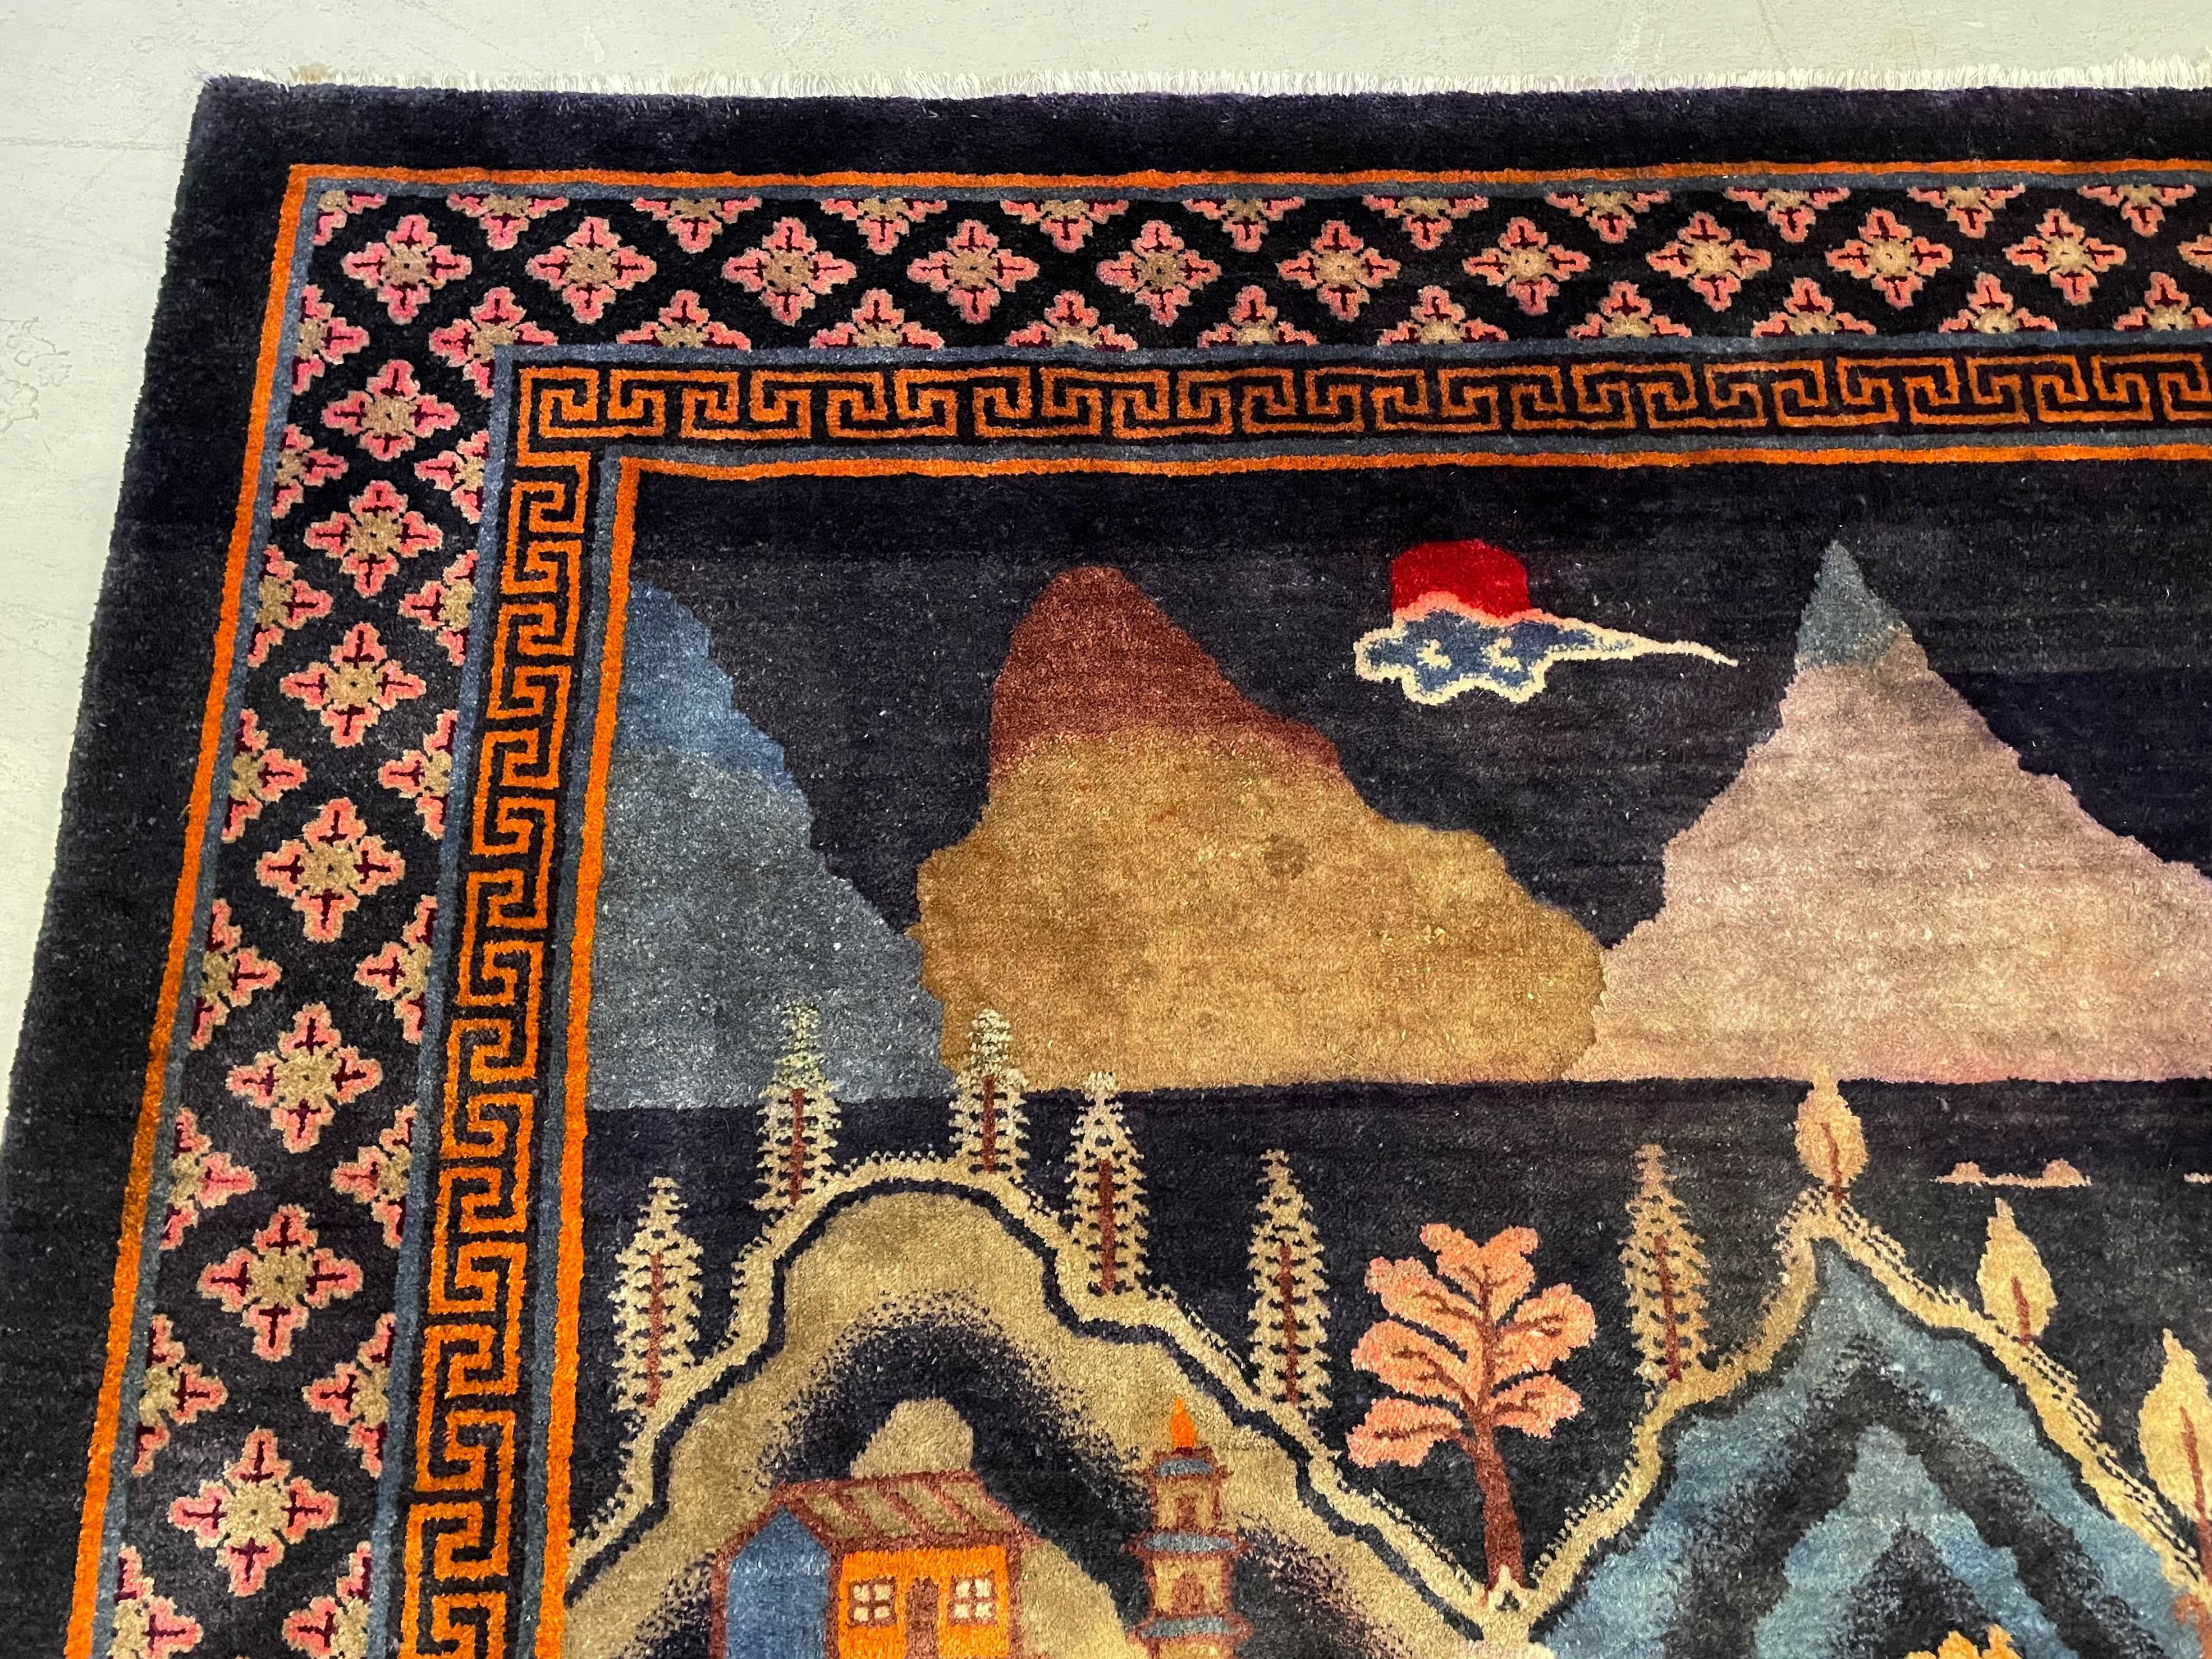 Tapis chinois Art déco en laine à paysage pictural provenant de Baotou, dans la région de la Mongolie intérieure. Magnifique vue panoramique d'un village sur un lac entouré de montagnes avec des arbres, des maisons, une pagode et un pont ou un